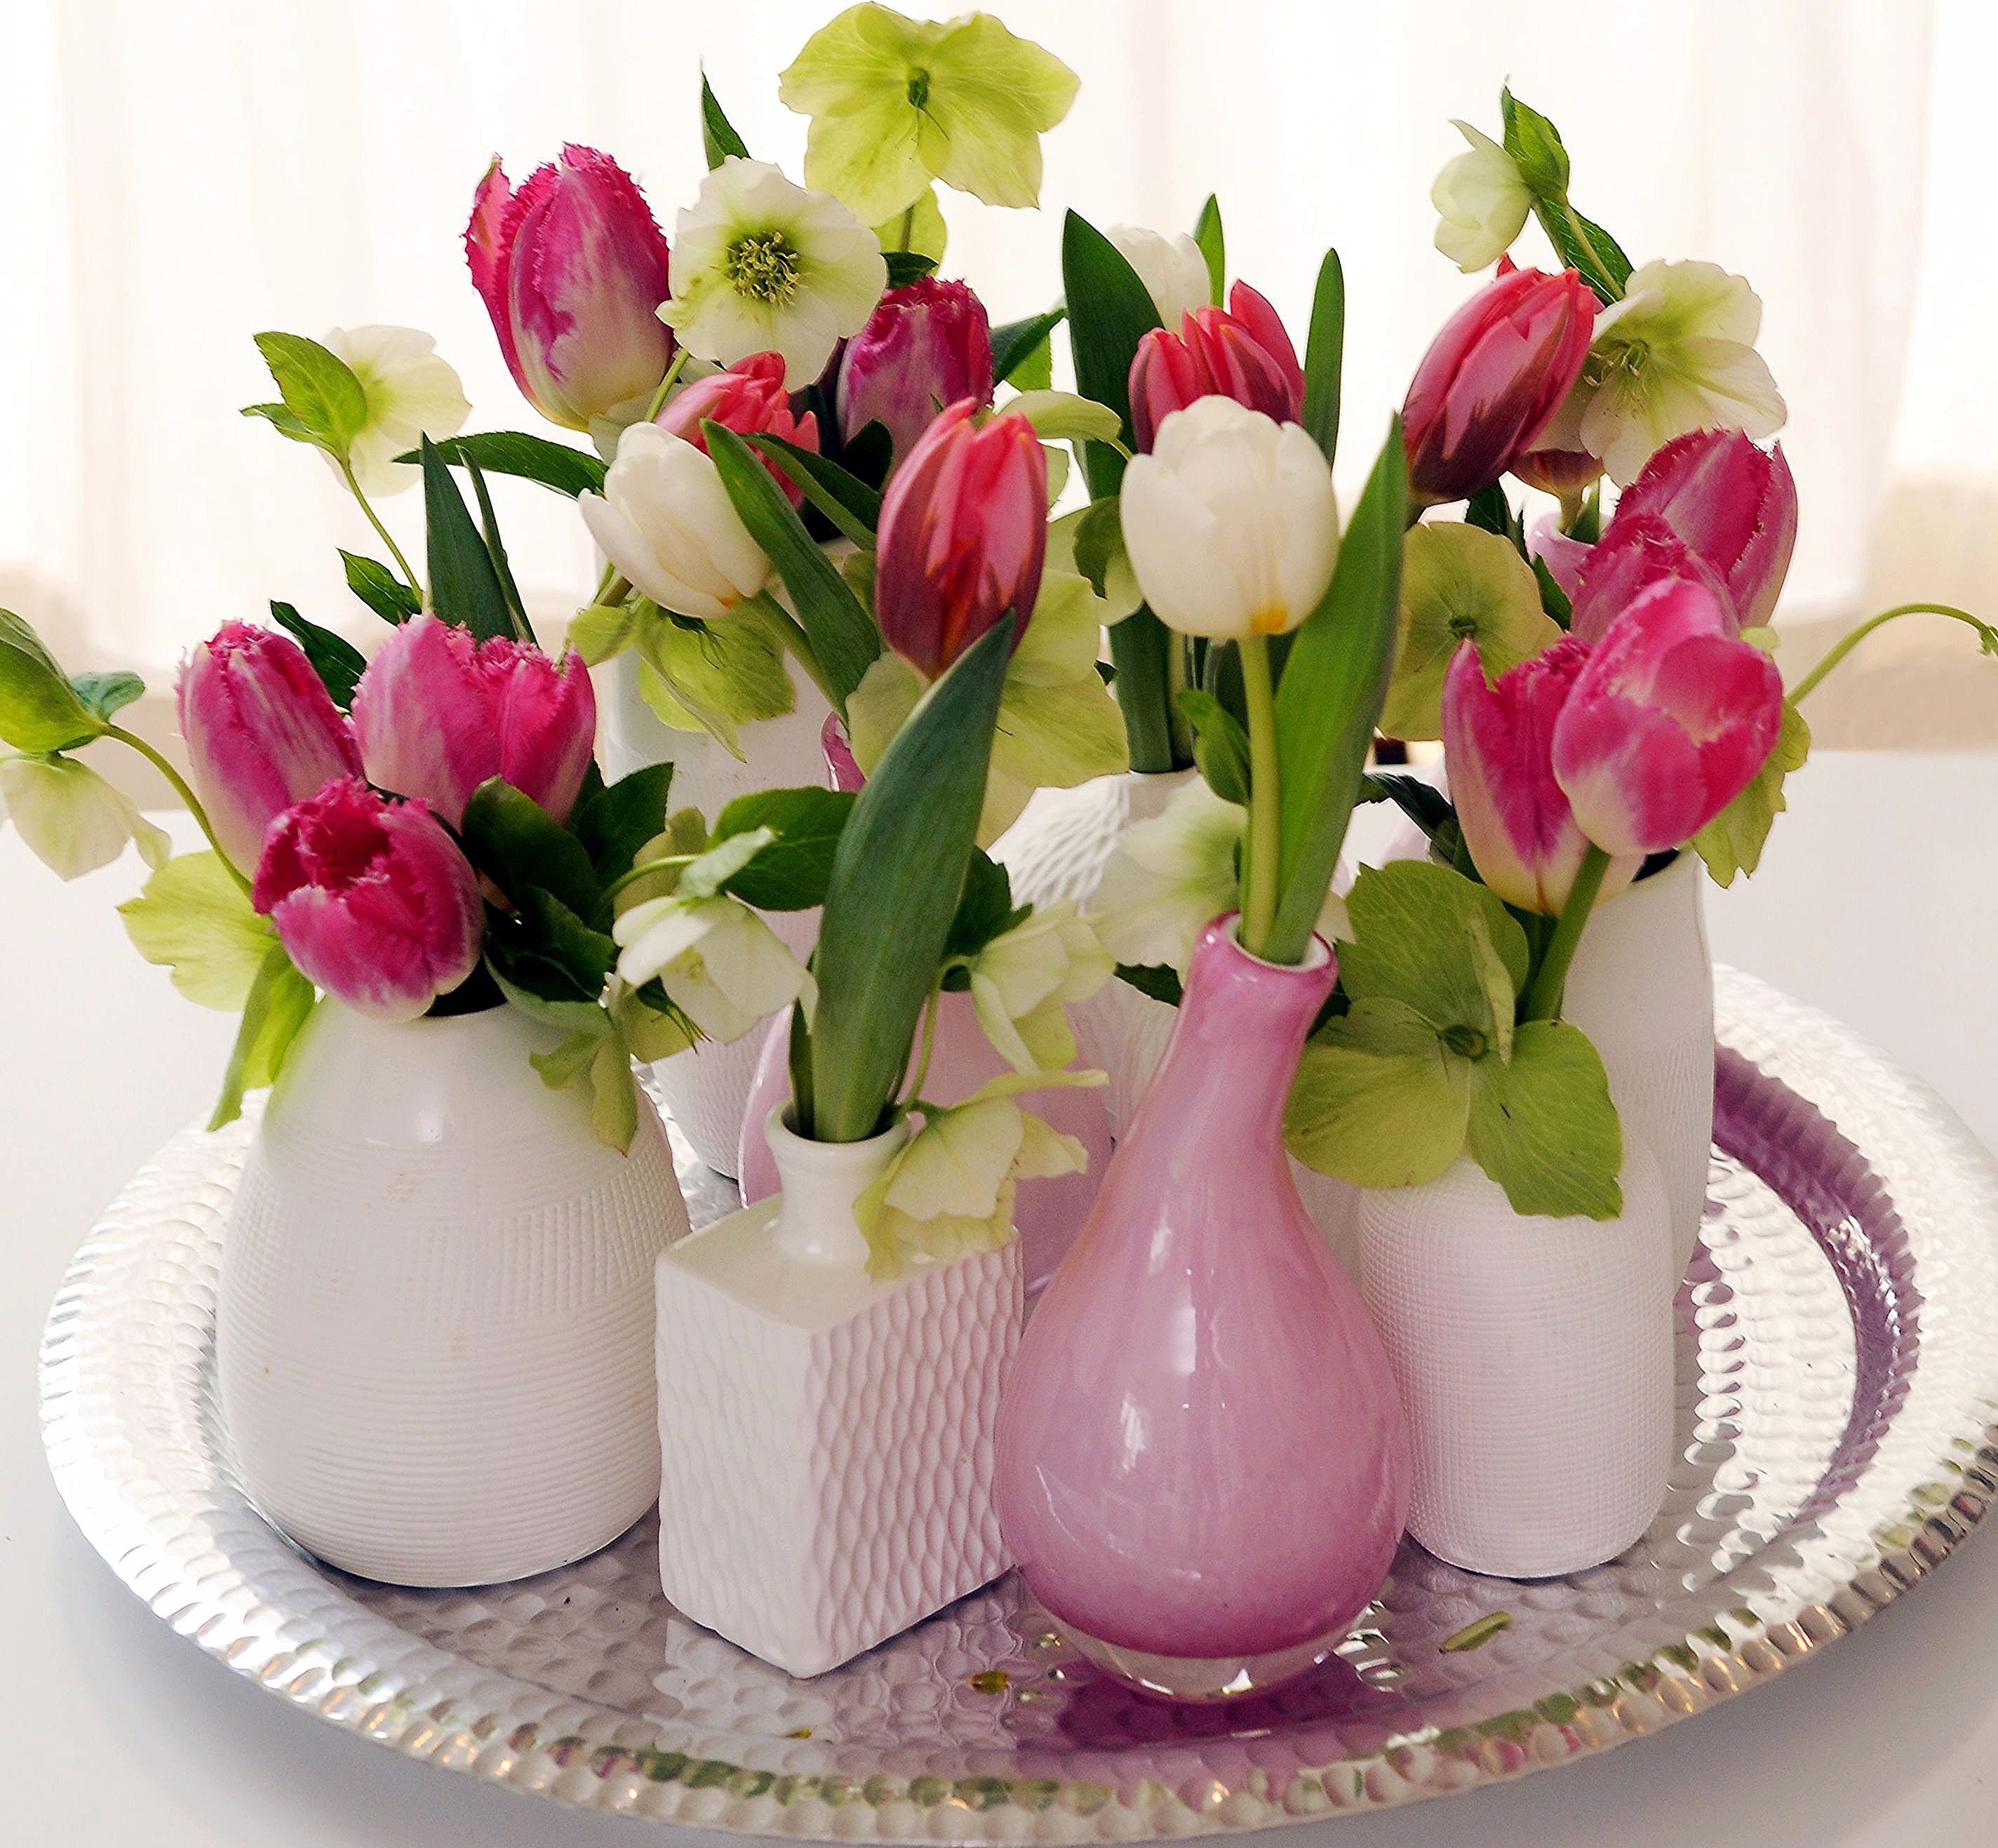 Фото тюльпаны в вазе на столе. Весенние композиции из цветов. Цветы в вазе. Тюльпаны в вазе. Букет тюльпанов в вазе.